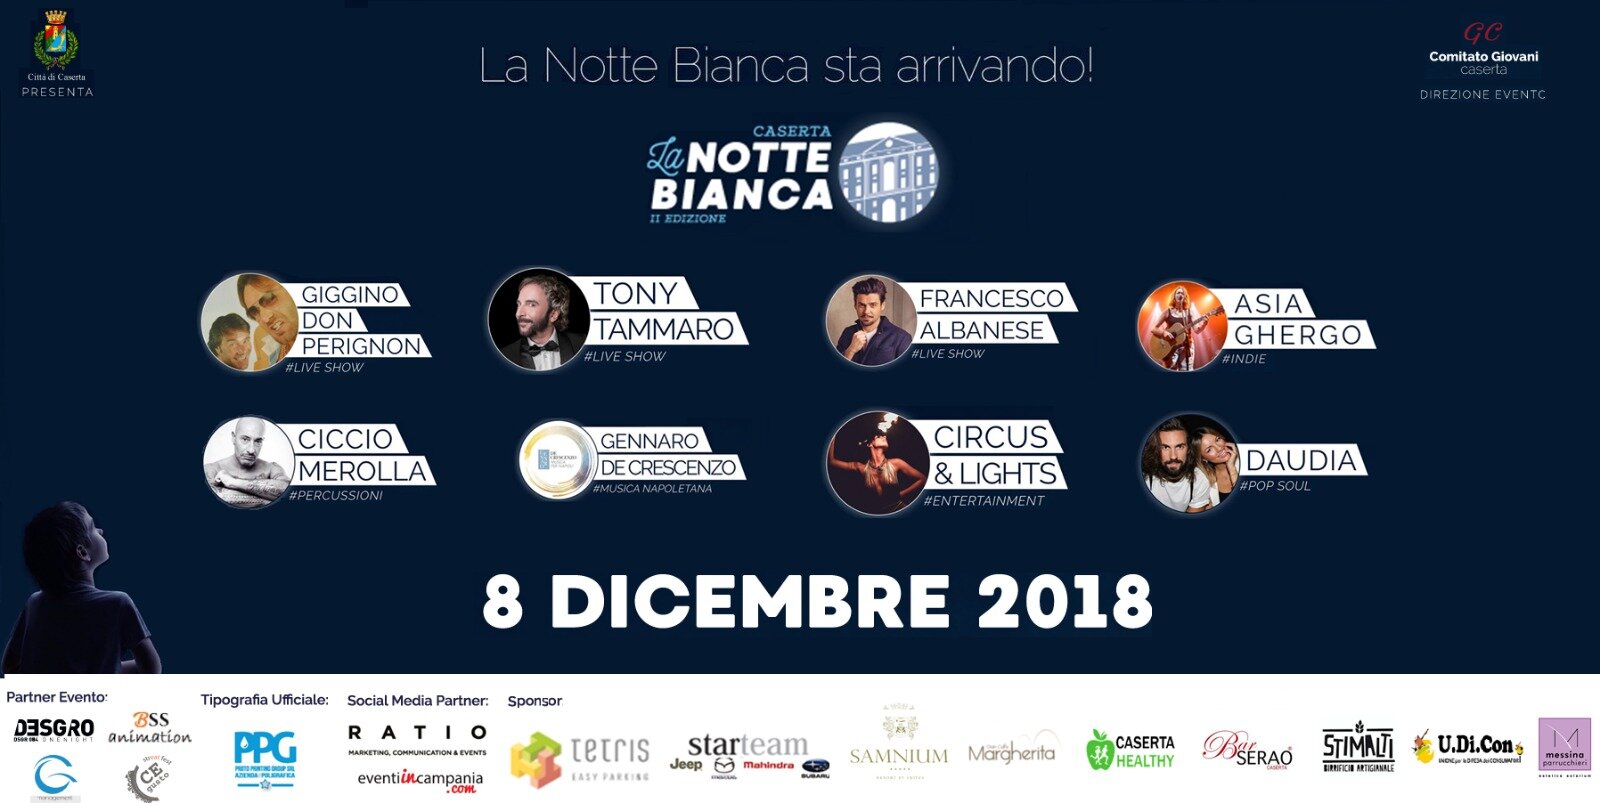 Definito il programma della Notte Bianca a Caserta, una manifestazione ricca di artisti e buona musica. Grandi artisti per una grande serata